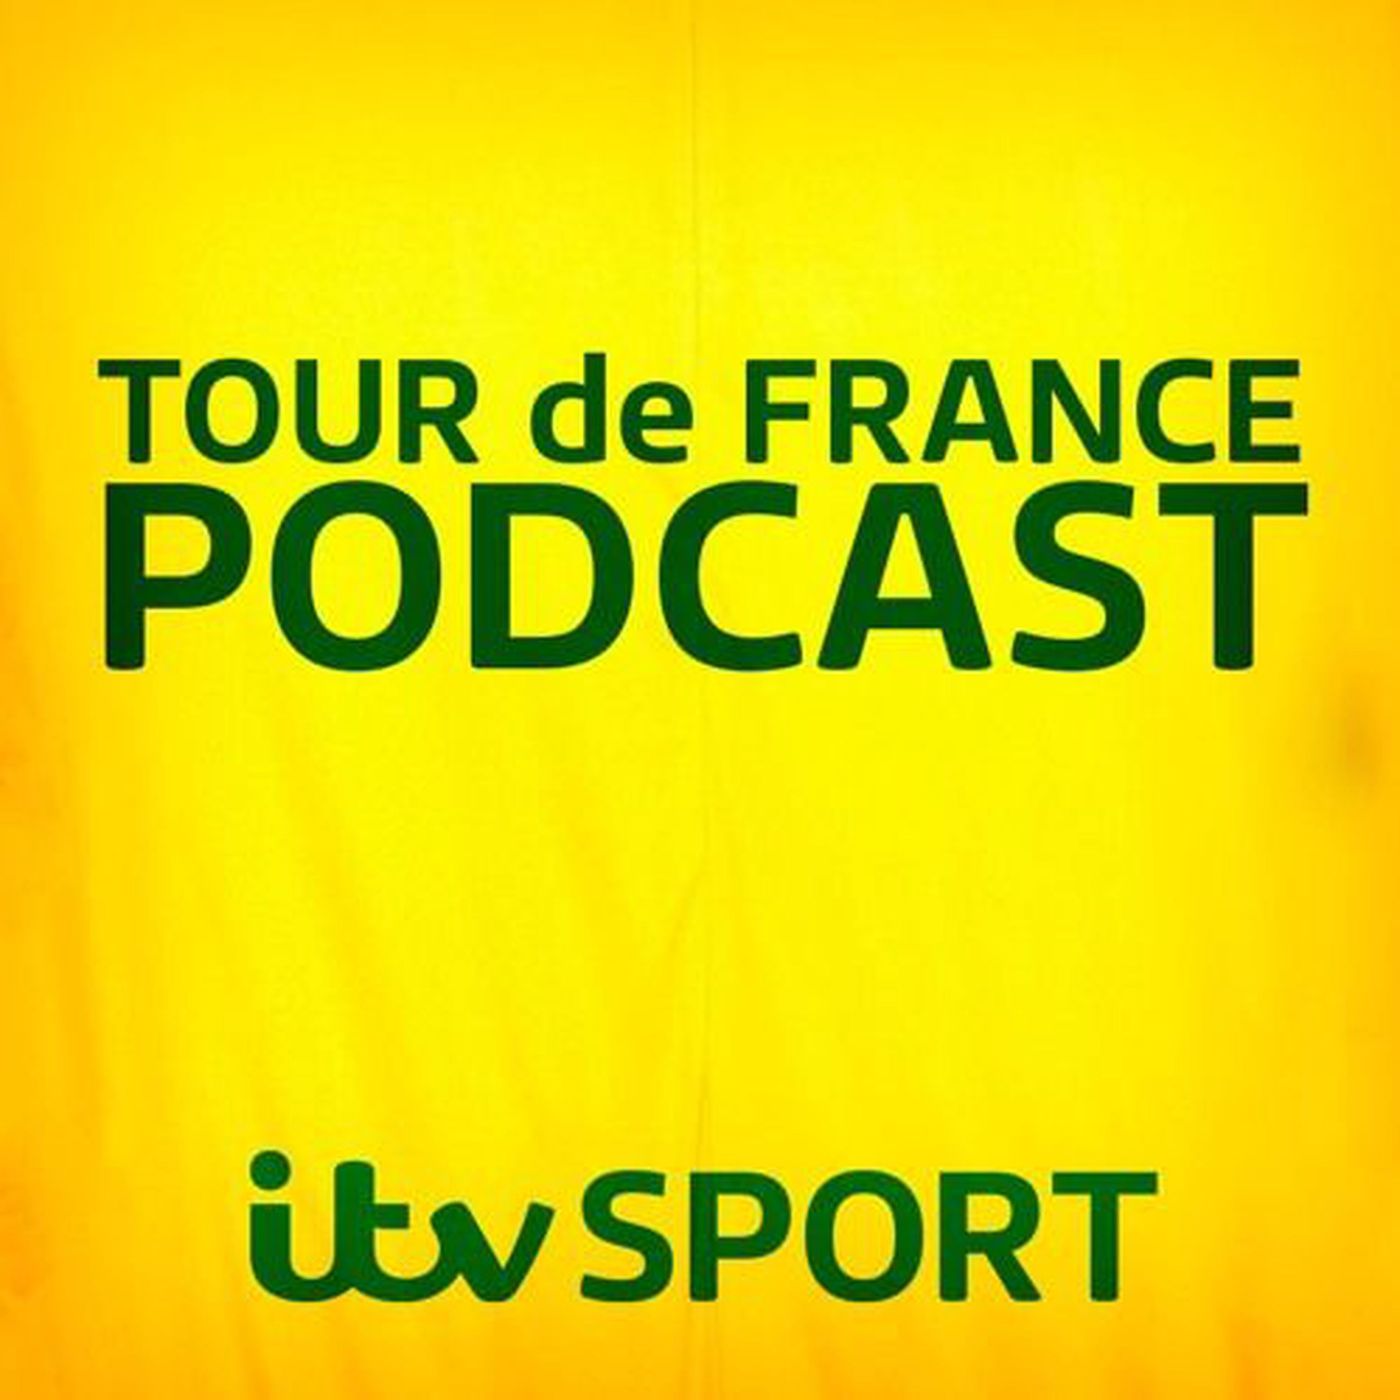 2016 Tour de France podcast: Stage 12 duathlon review